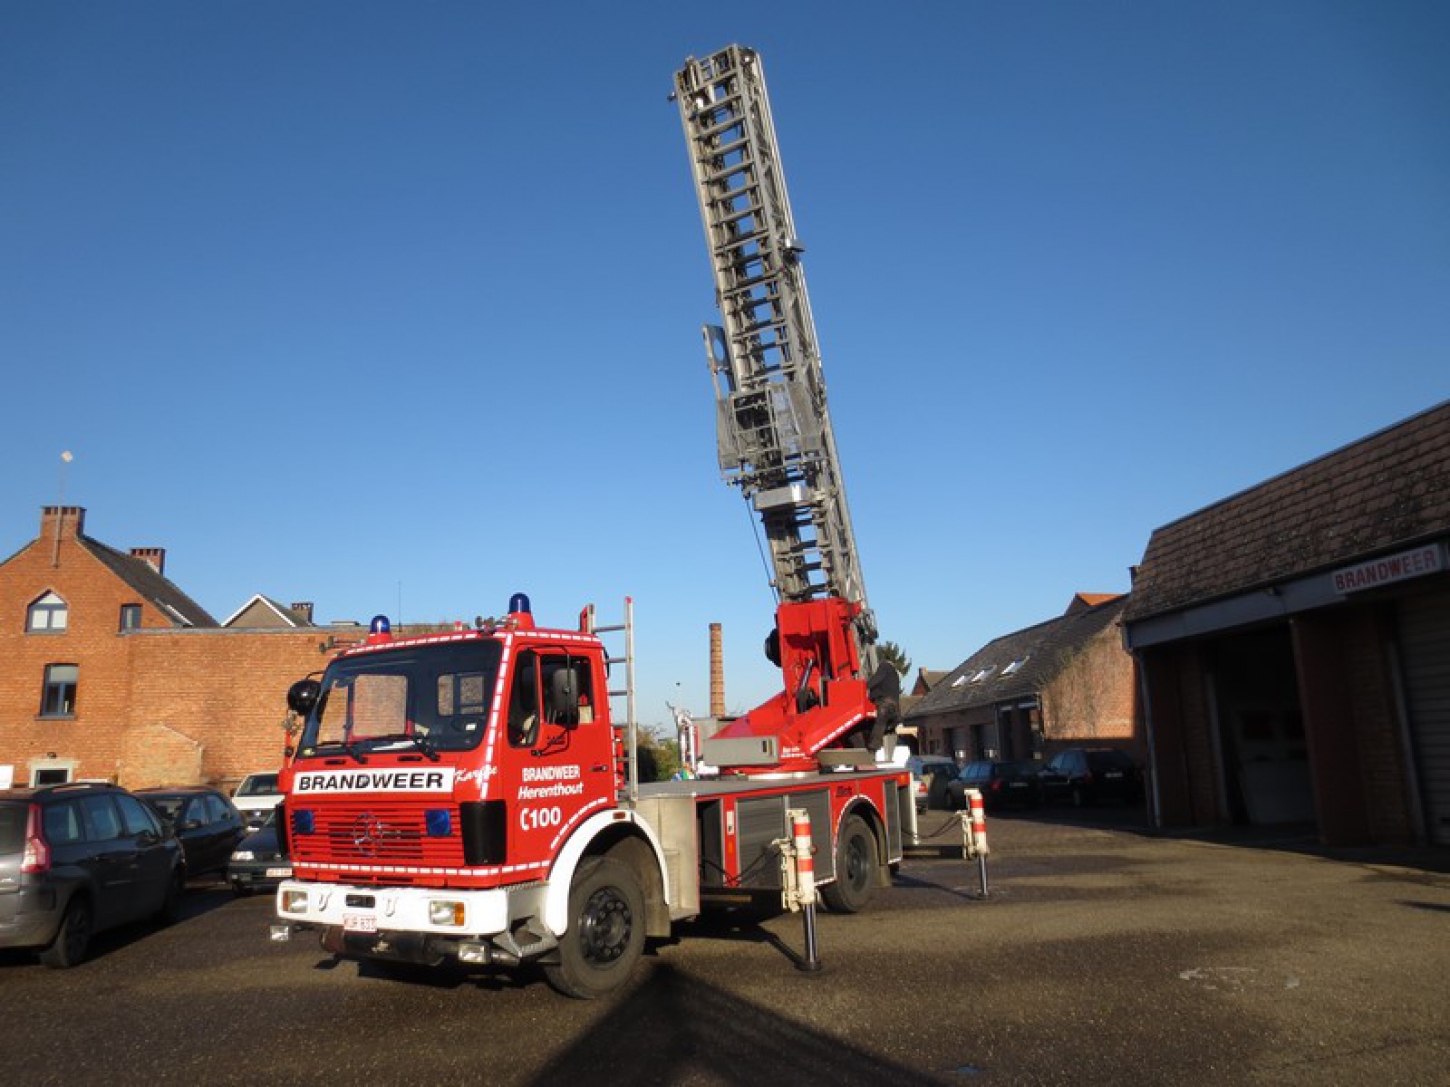 Un camion de pompiers peut lui aussi être équipé d’un élévateur aérien pour pouvoir intervenir rapidement en hauteur en cas d’urgence. Un contrôle est obligatoire dans ce cas.